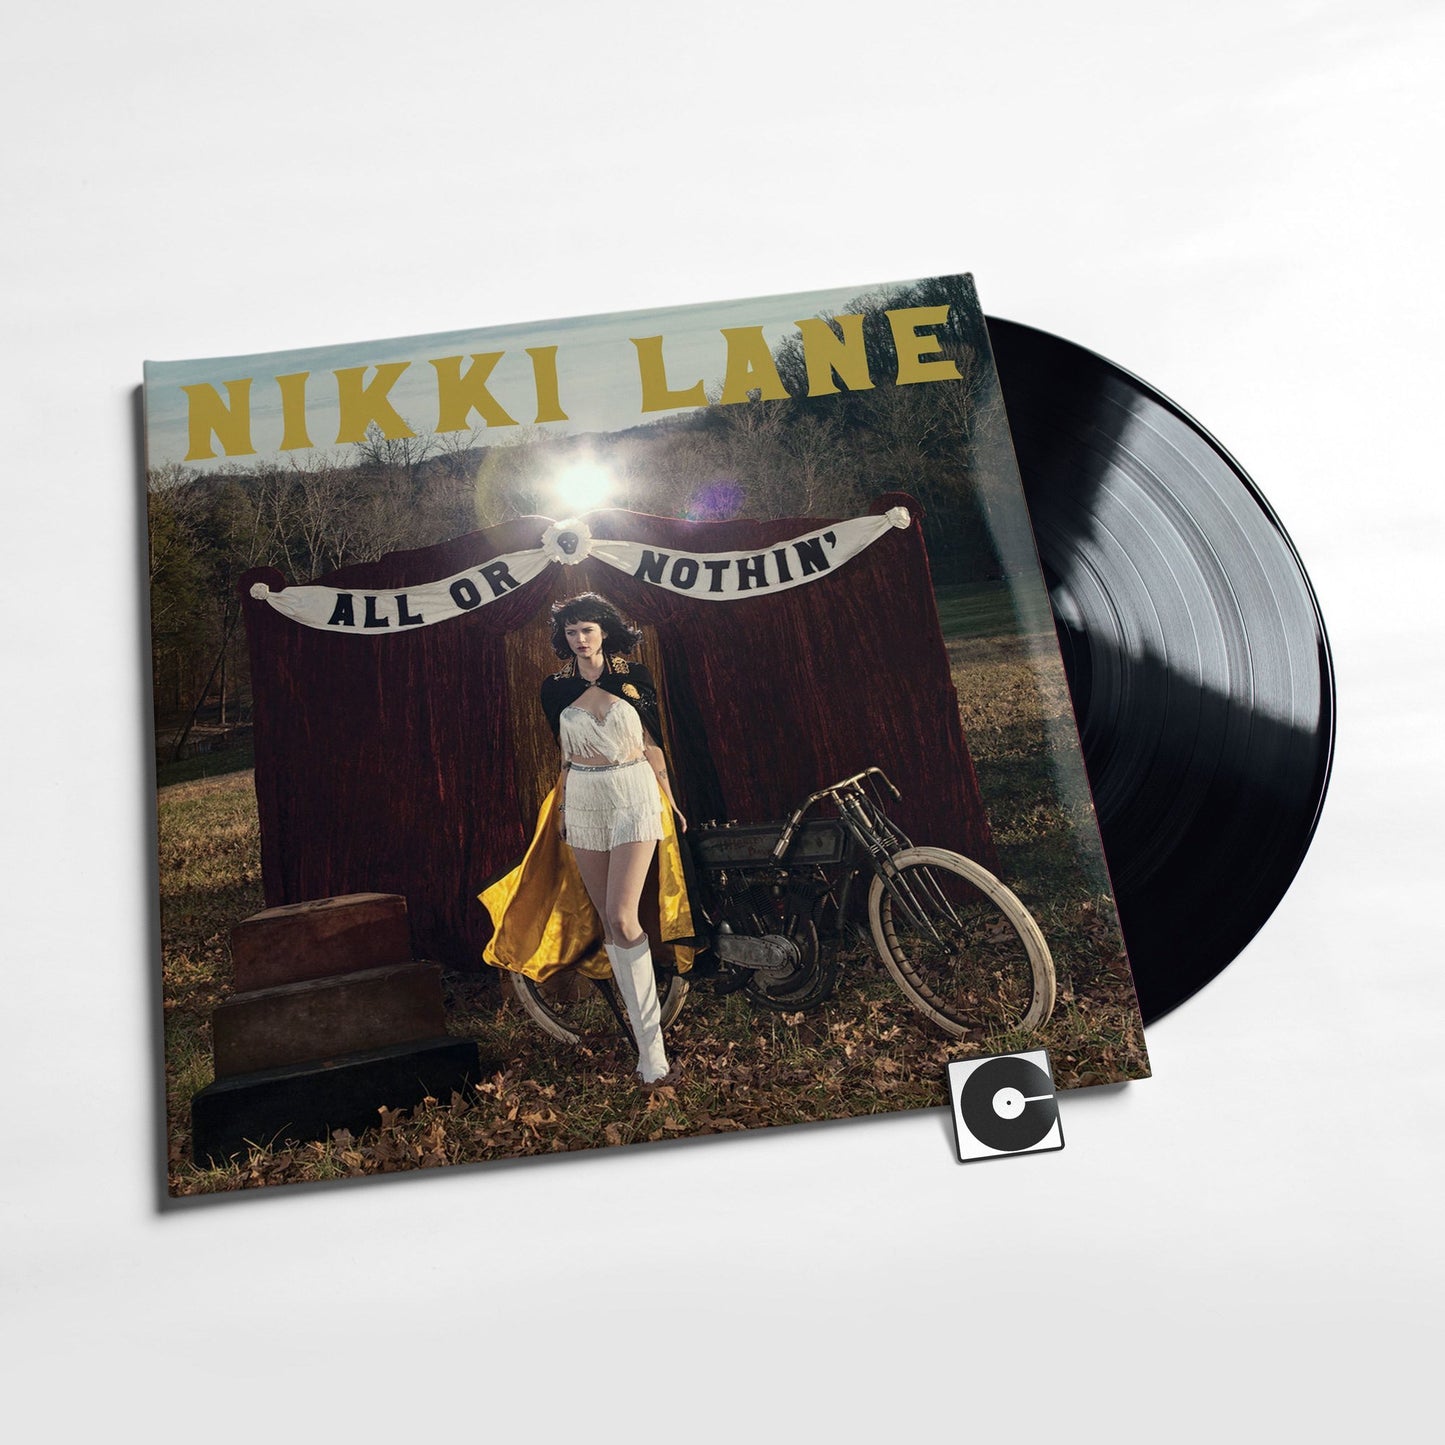 Nikki Lane - "All Or Nothin'"